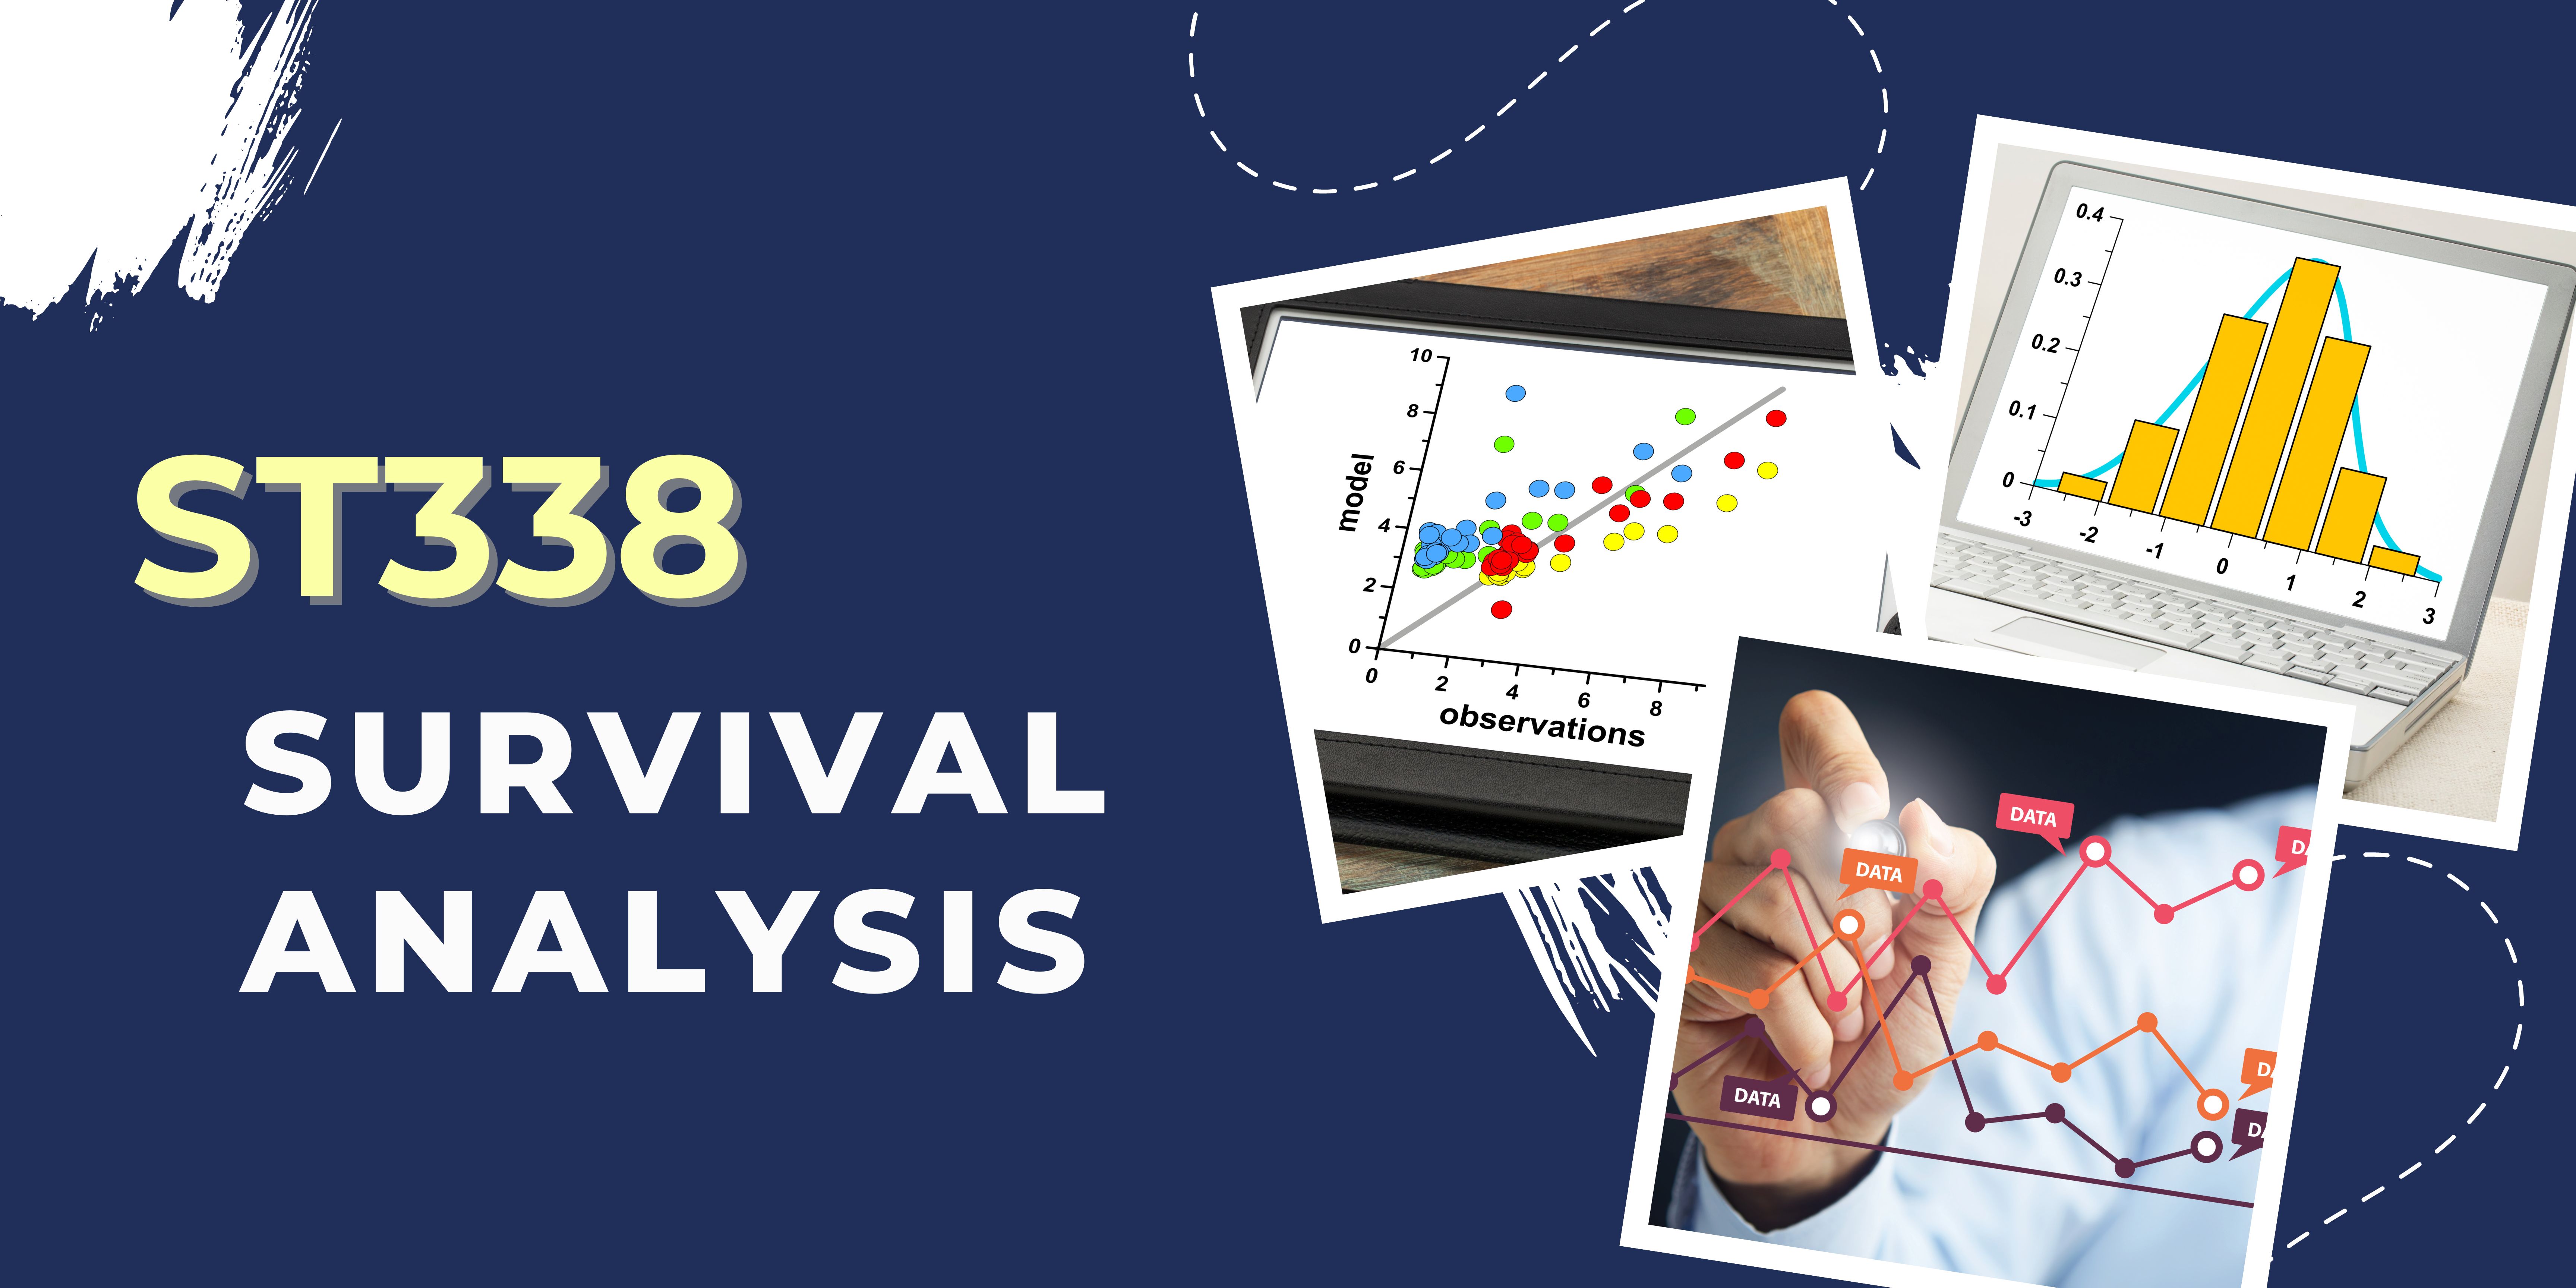 ST338 Survival Analysis (1/2567)